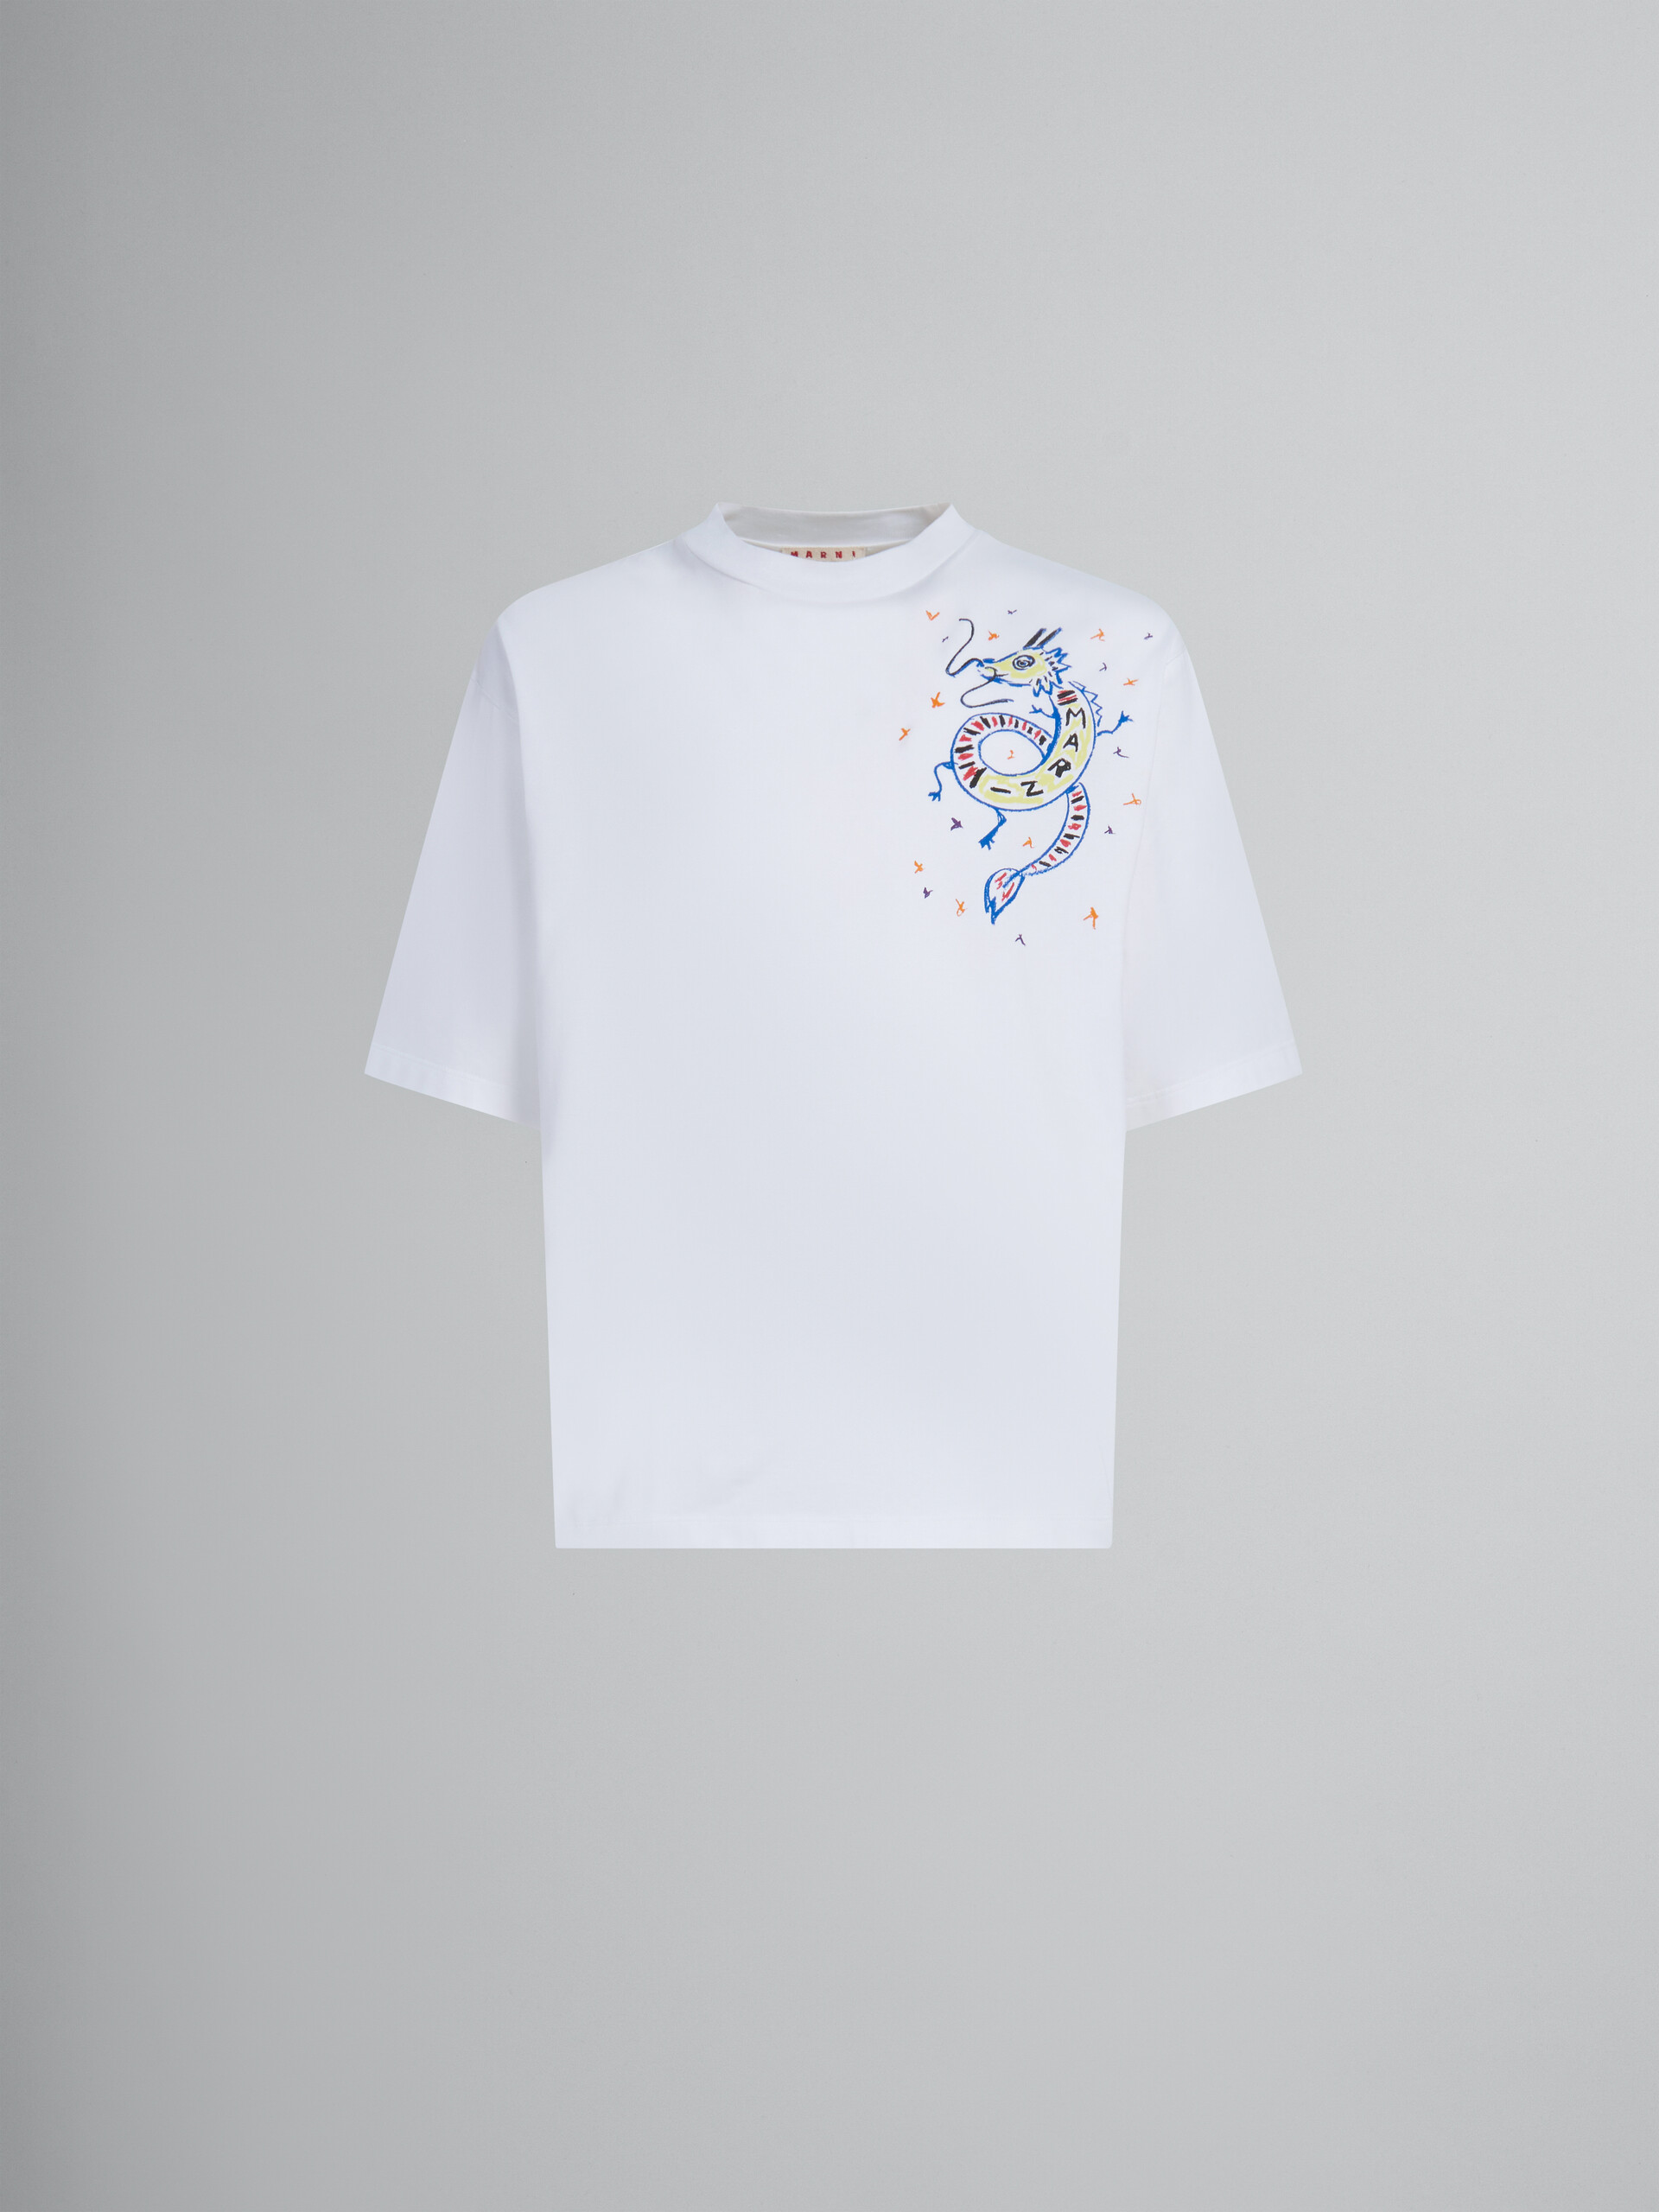 Weißes T-Shirt aus Bio-Jersey mit Drachen-Print - T-shirts - Image 1